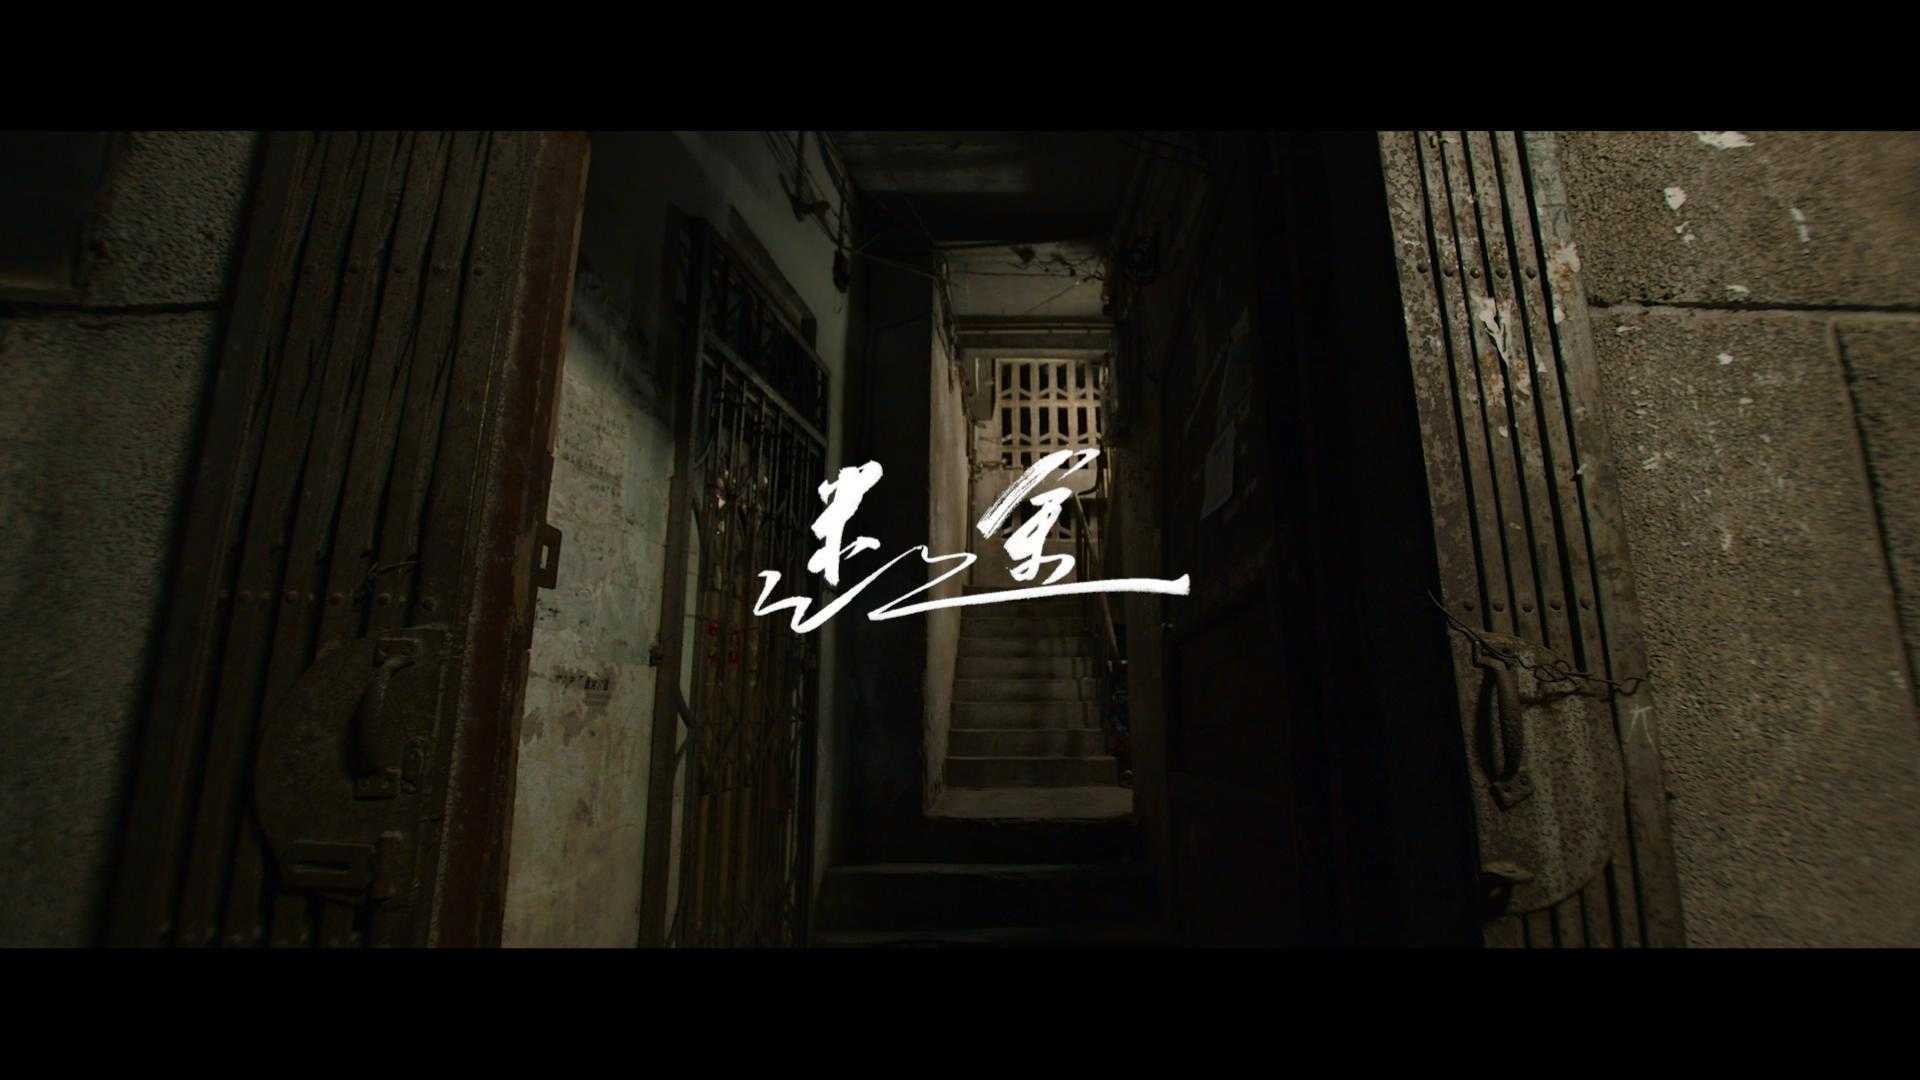 原创歌曲《迷途》MV